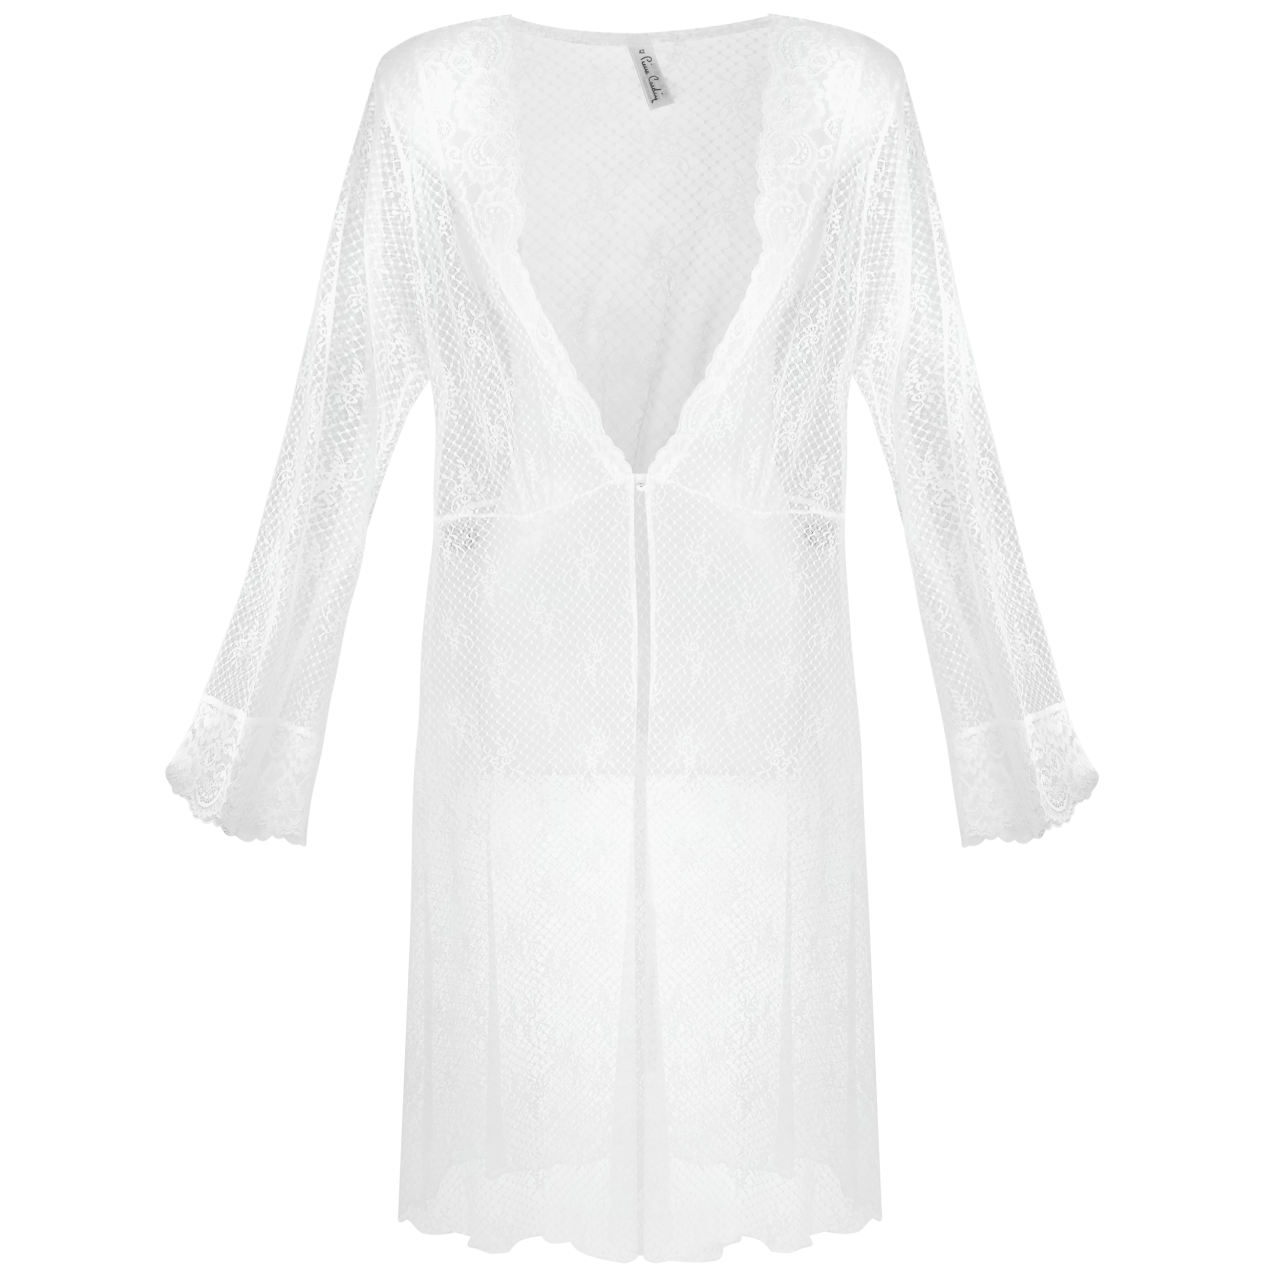 لباس خواب زنانه پیر کاردین-Pierre Cardin لباس خواب زنانه کد 4037 - سفید - حریر - گیپور - طرح دار